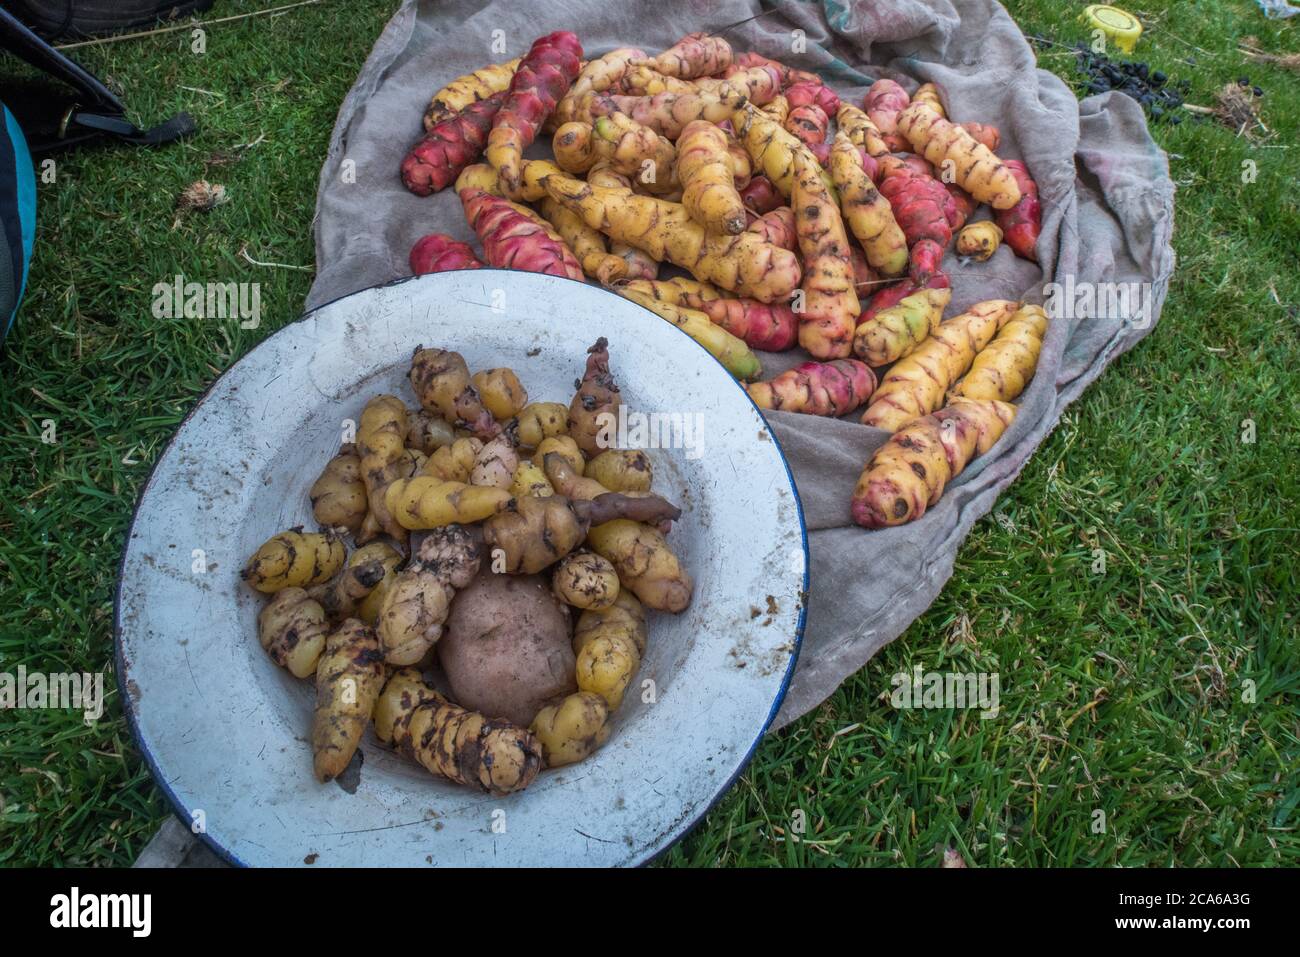 Frisches oca, eine Art Wurzelgemüse, nach der Ernte in den peruanischen Anden. OCA wird hier seit der Zeit vor incan angebaut. Stockfoto